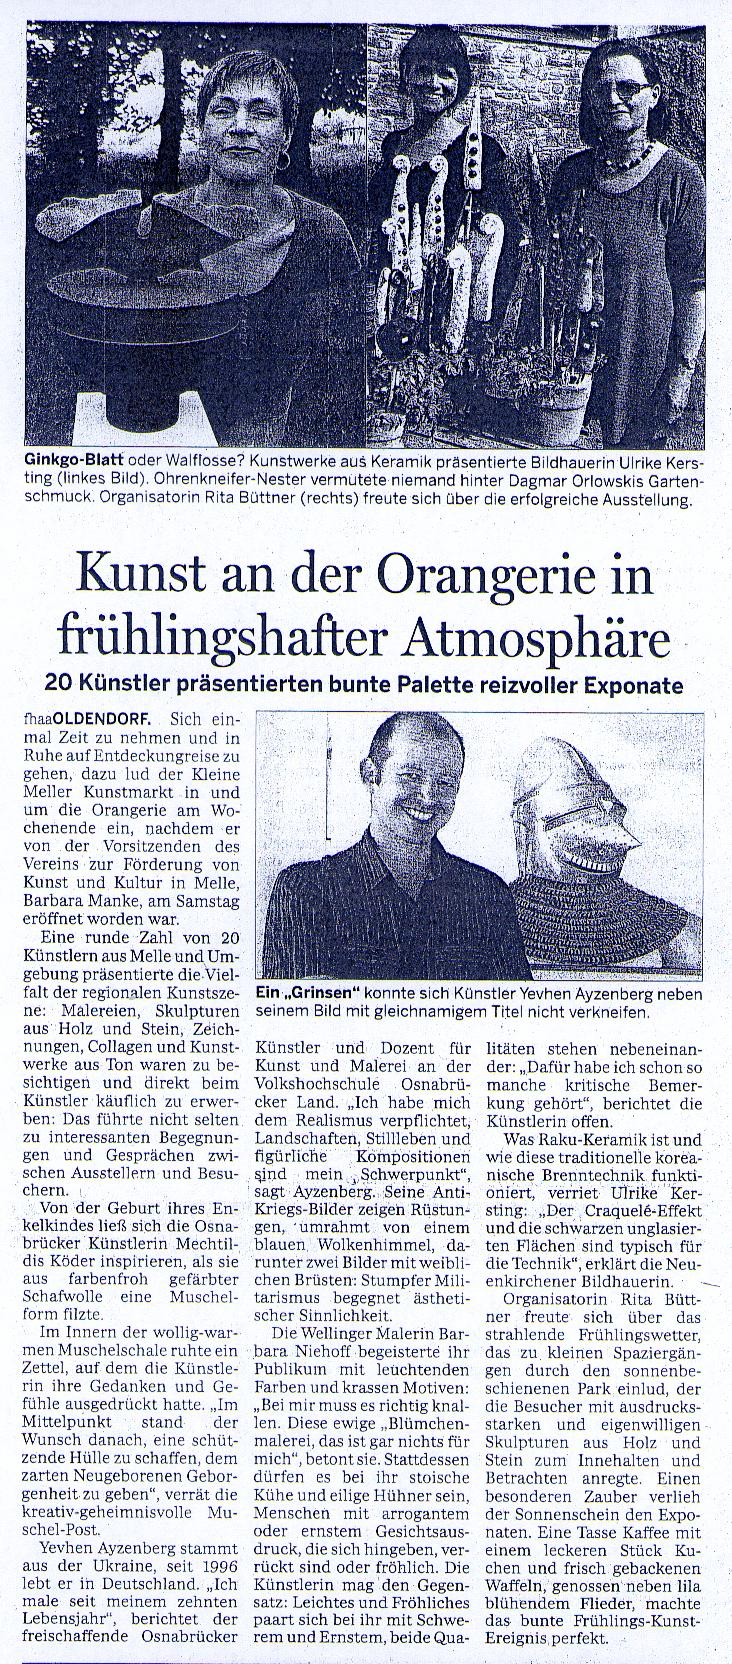 NOZ - Meller Kreisblatt vom 04.05.09.jpg